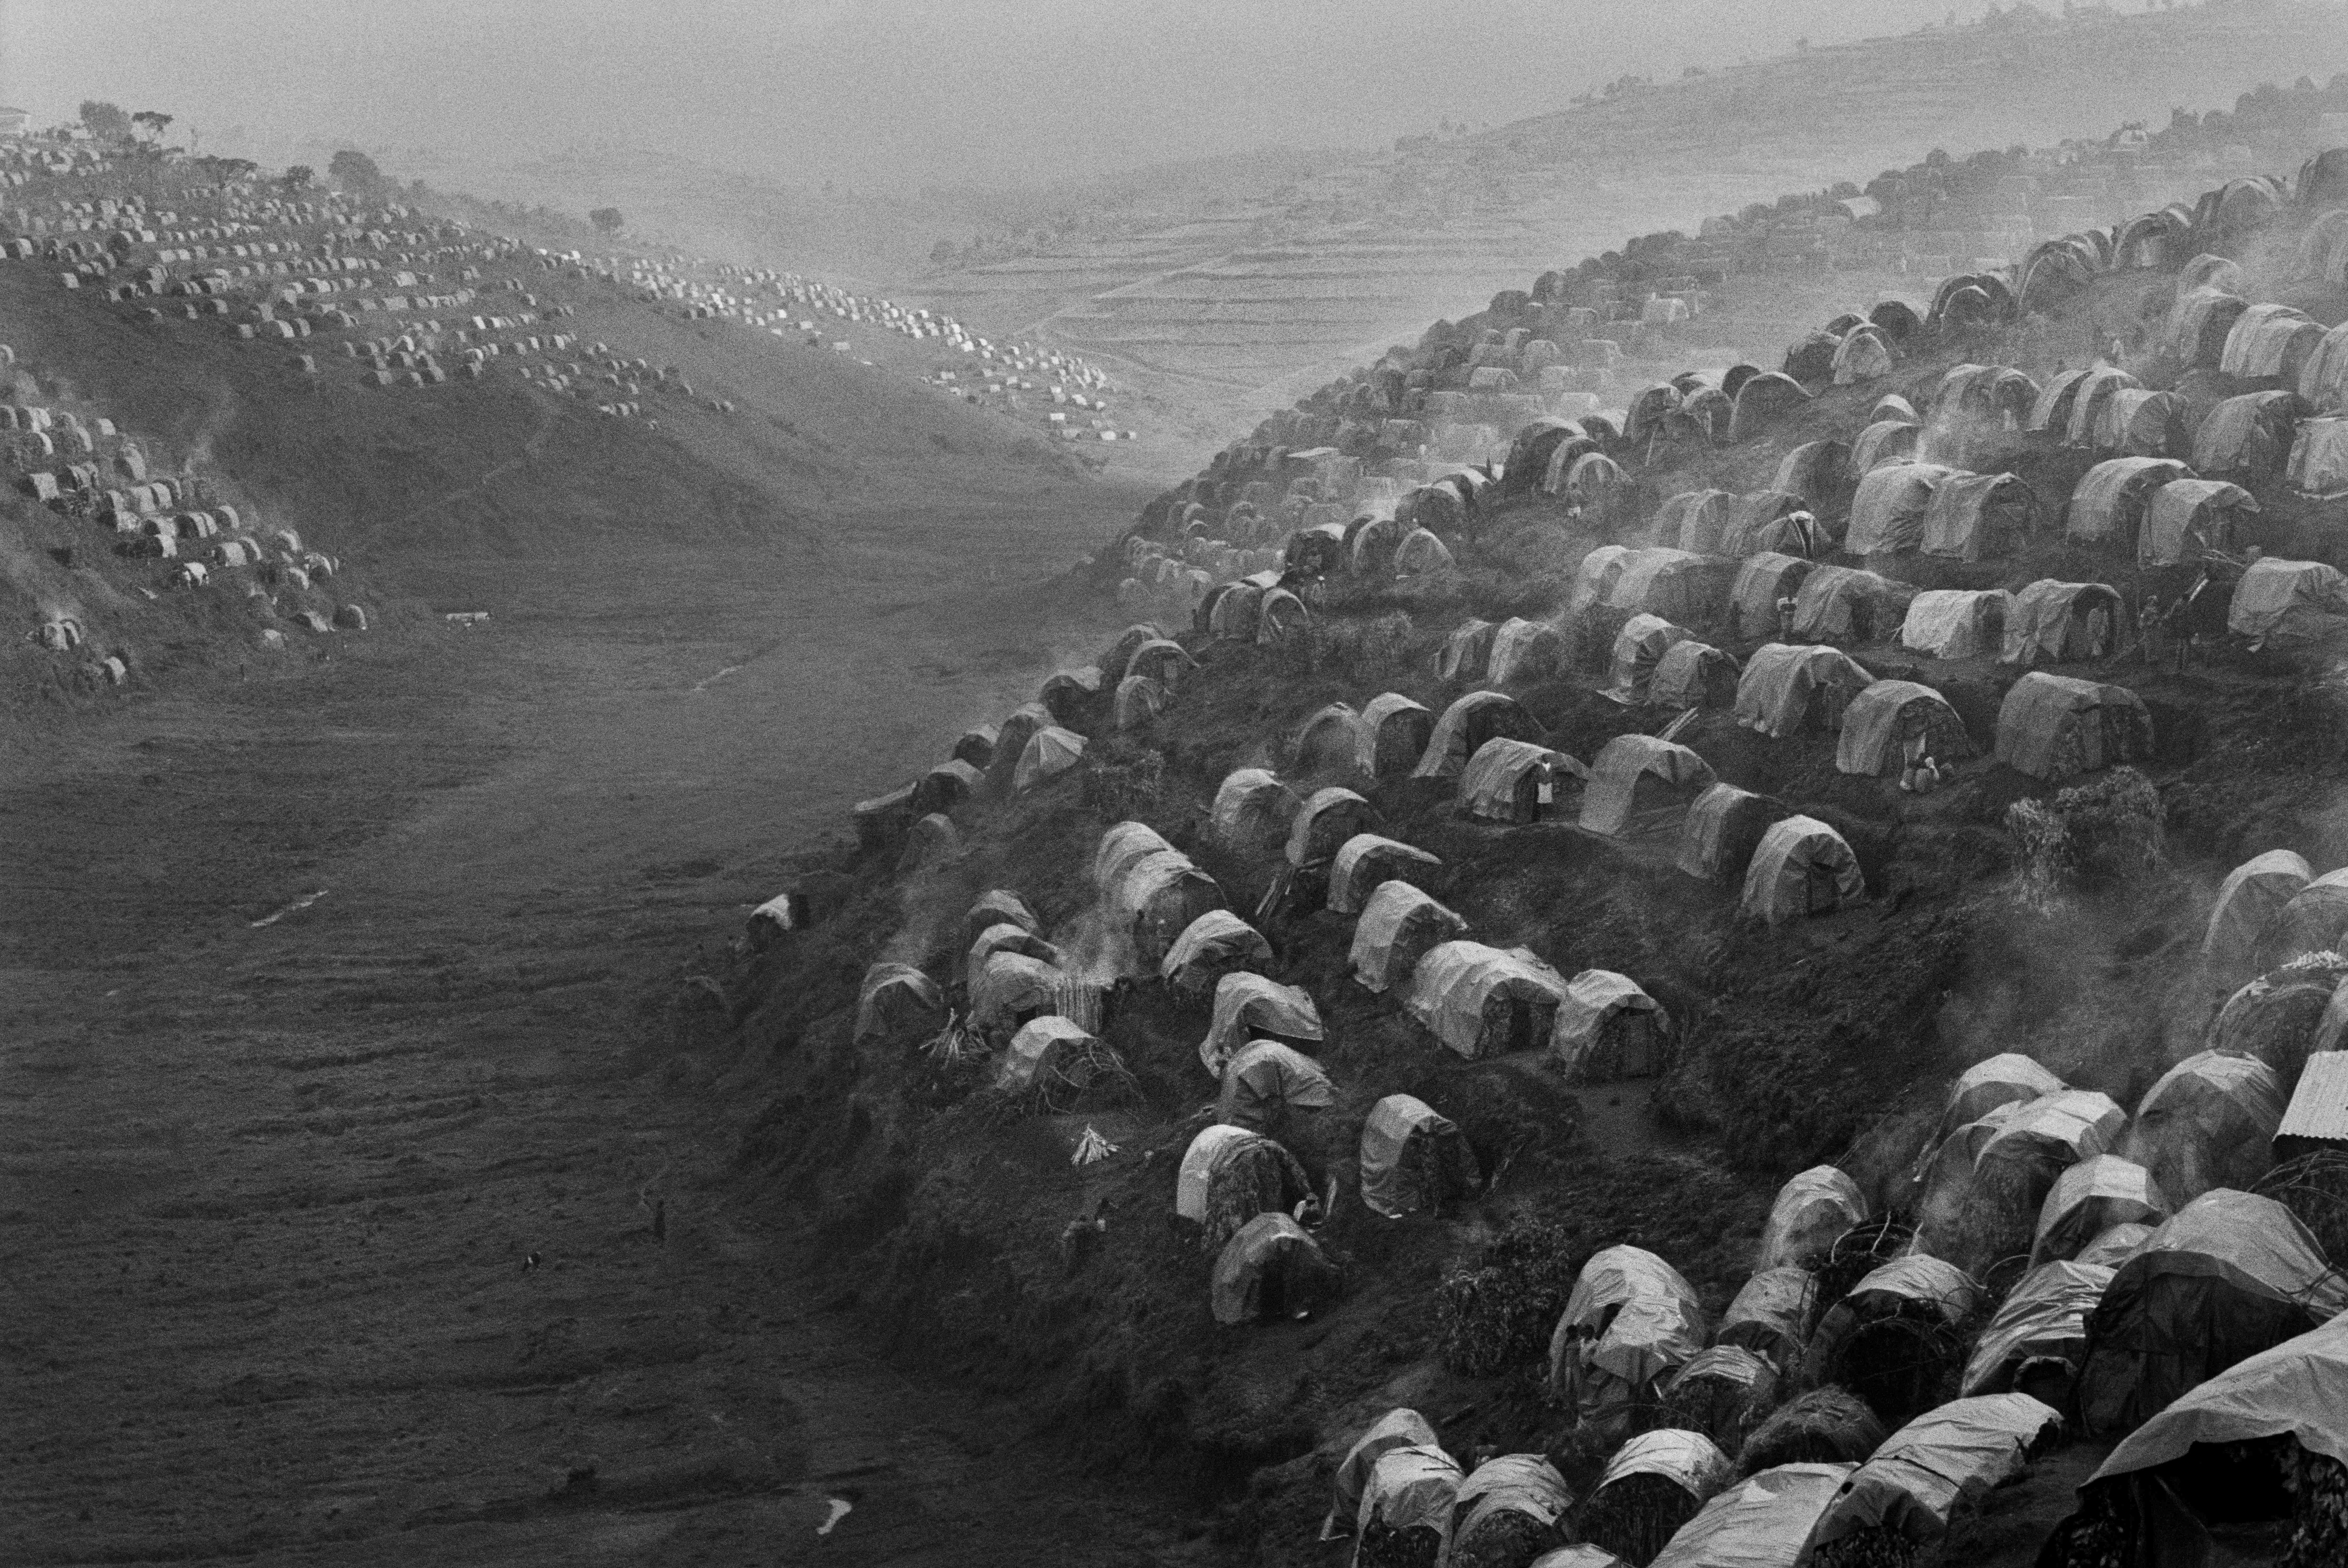 Лагерь беженцев, Руанда, 1995. Автор Себастьян Сальгадо